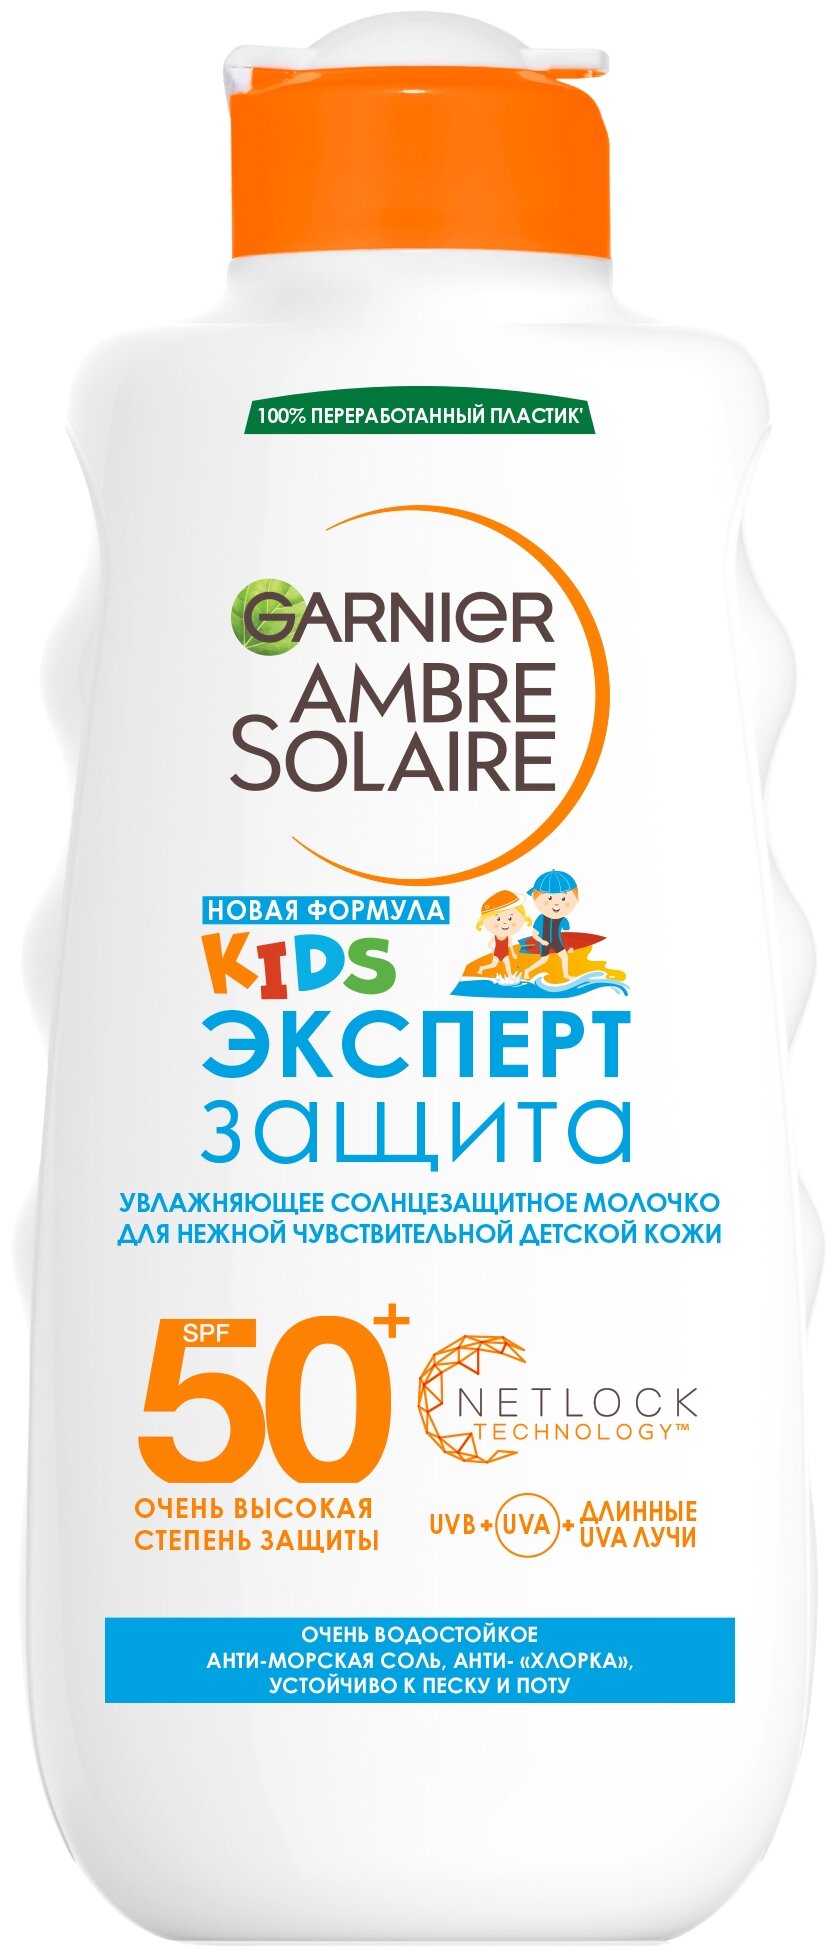 Garnier Увлажняющее солнцезащитное молочко детское "Эксперт защита", водостойкое, гипоаллергенное, SPF 50+, 200 мл (Garnier, ) - фото №1